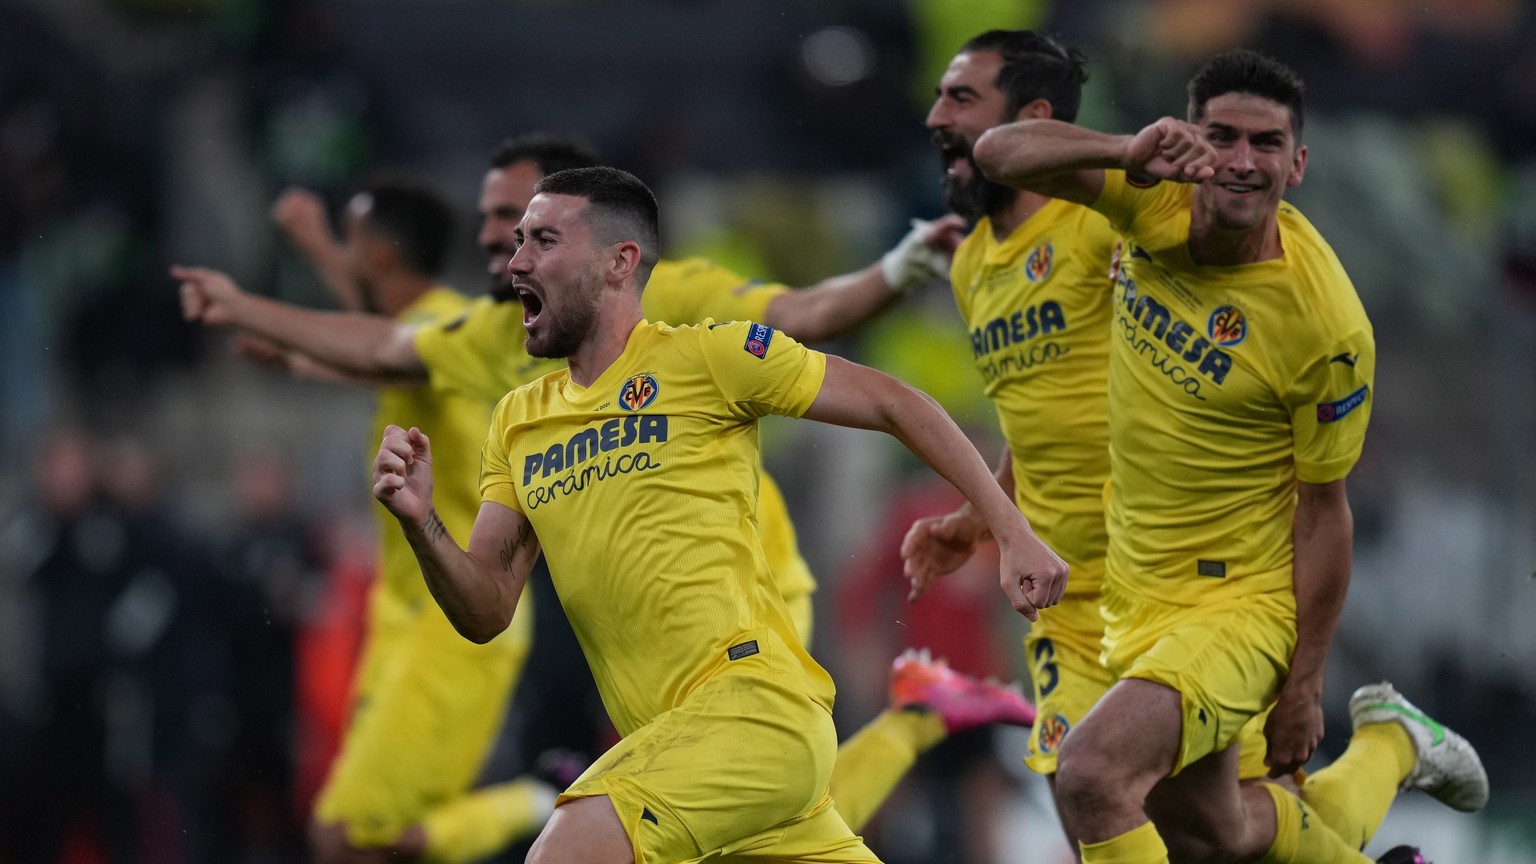 Der Moment der Entscheidung: Villarreals Spieler eilen zu ihrem Goalie, um den Triumph zu feiern.